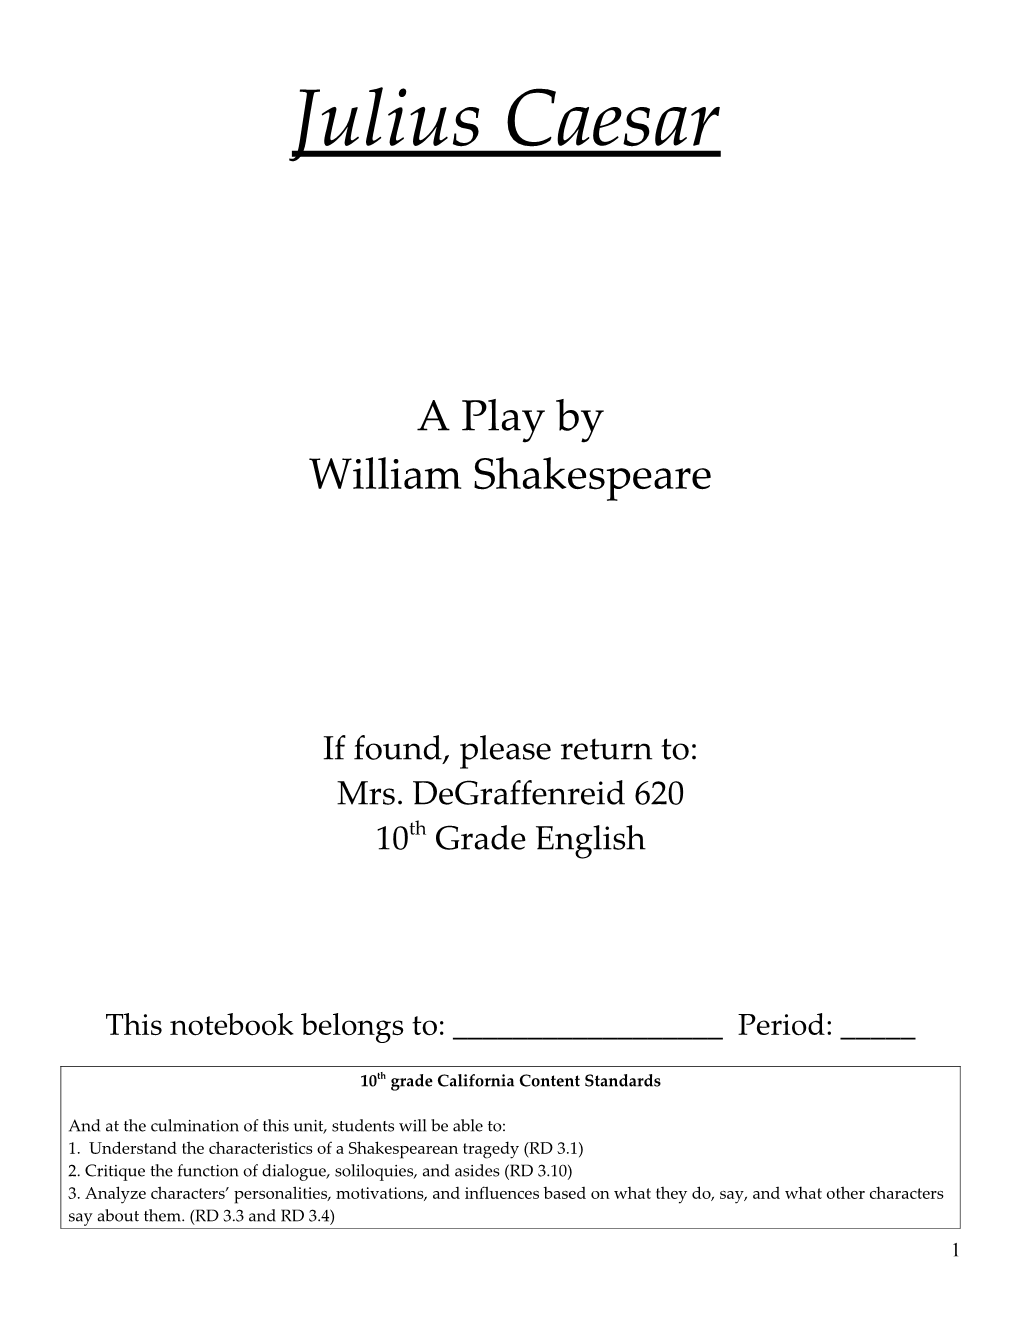 William Shakespeare s2